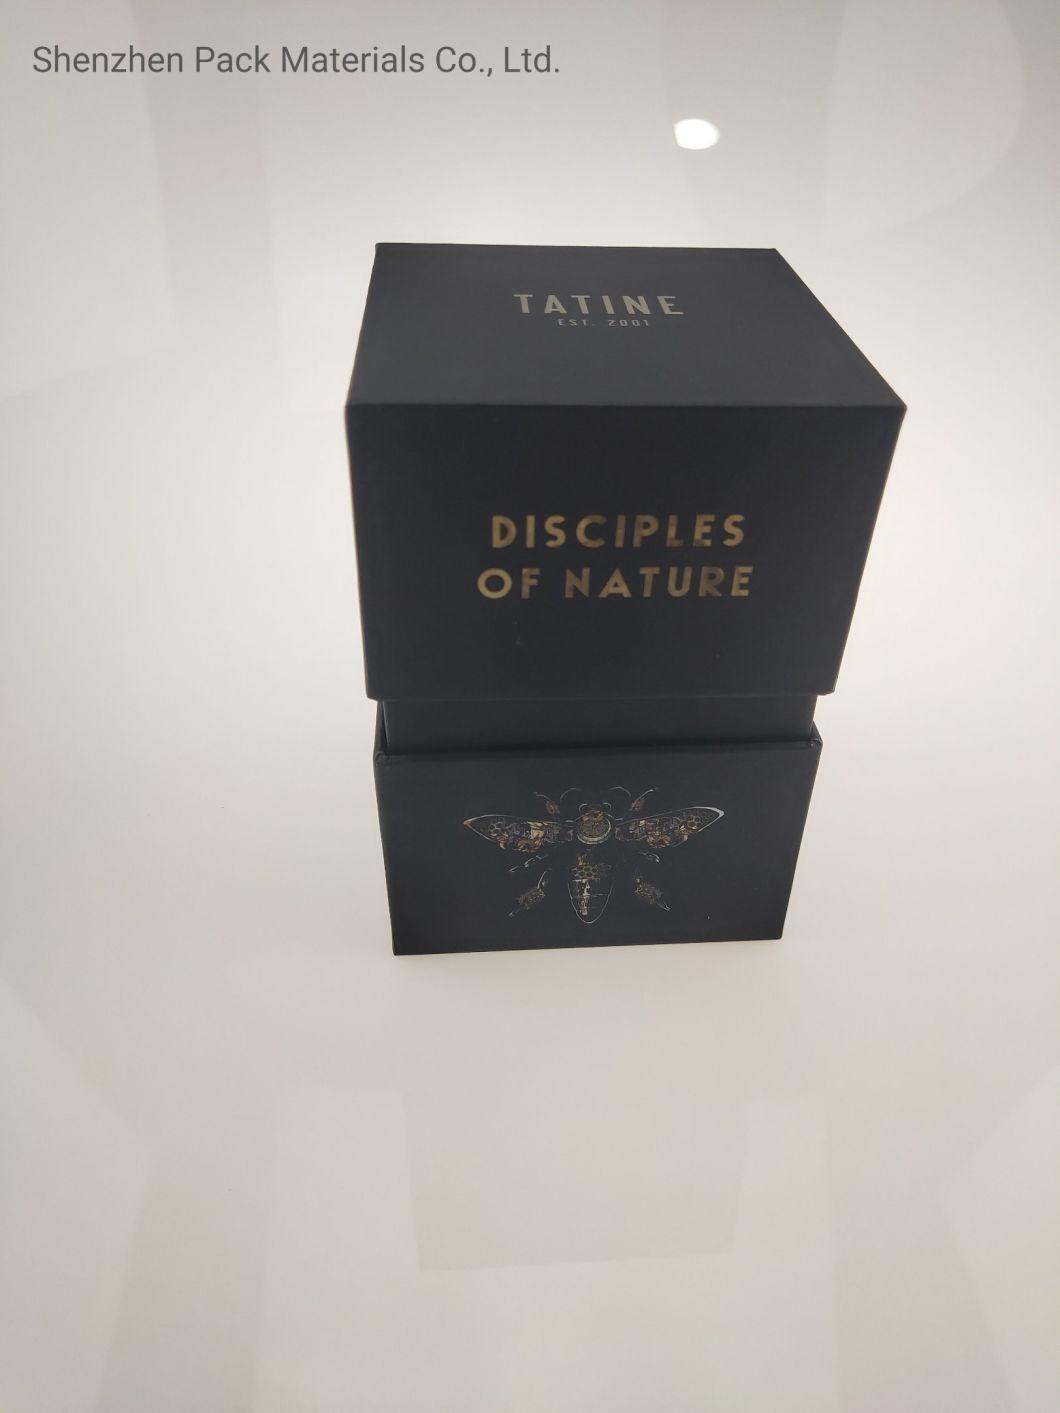 Lid Base Luxury Stock Embossing Hot Stamping Pattern Custom Packaging Black Cardboard Box